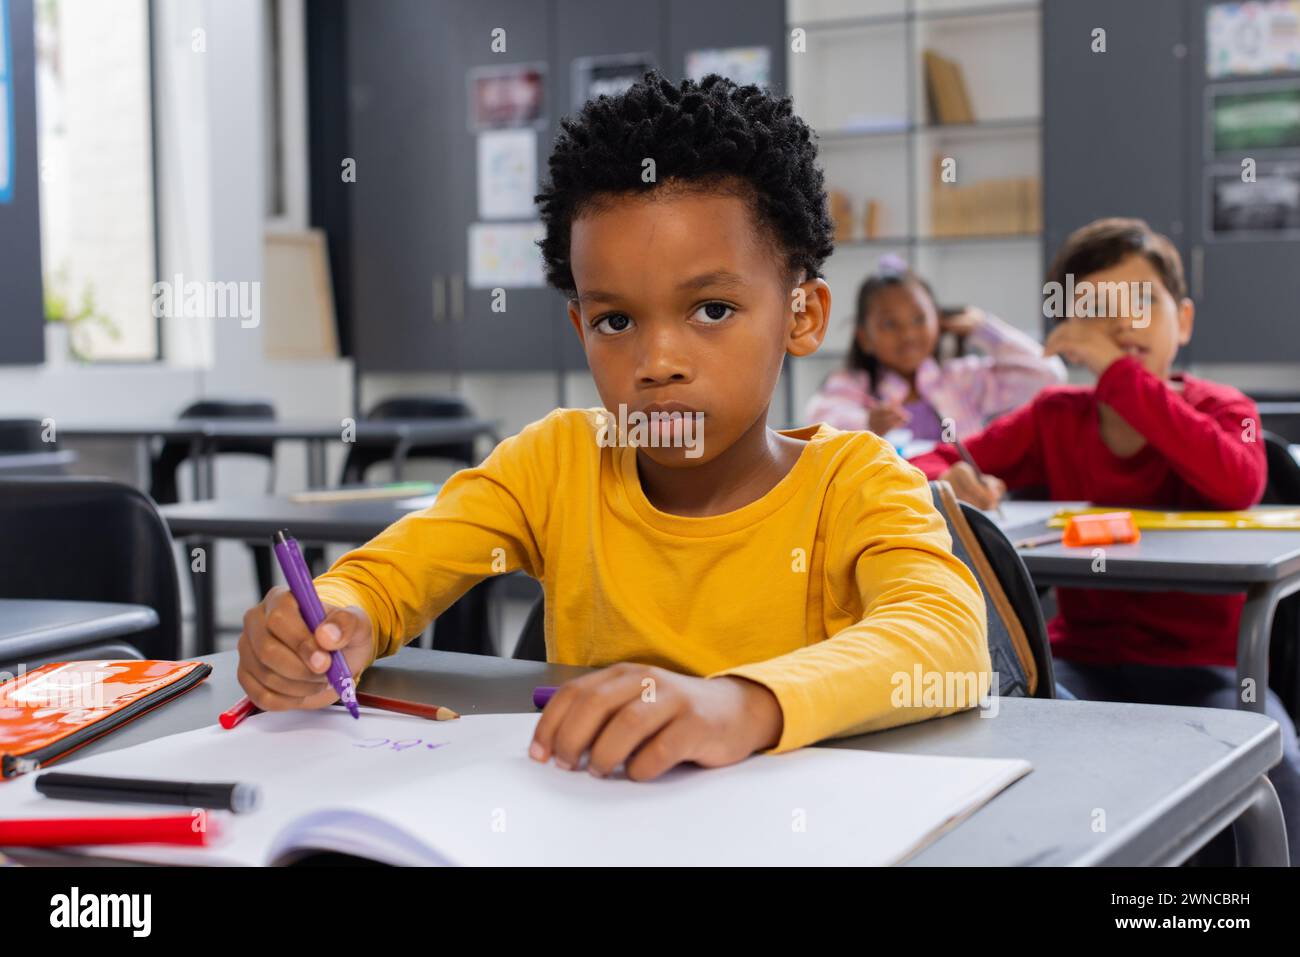 Garçon afro-américain dans une chemise jaune dessine dans une salle de classe d'école Banque D'Images